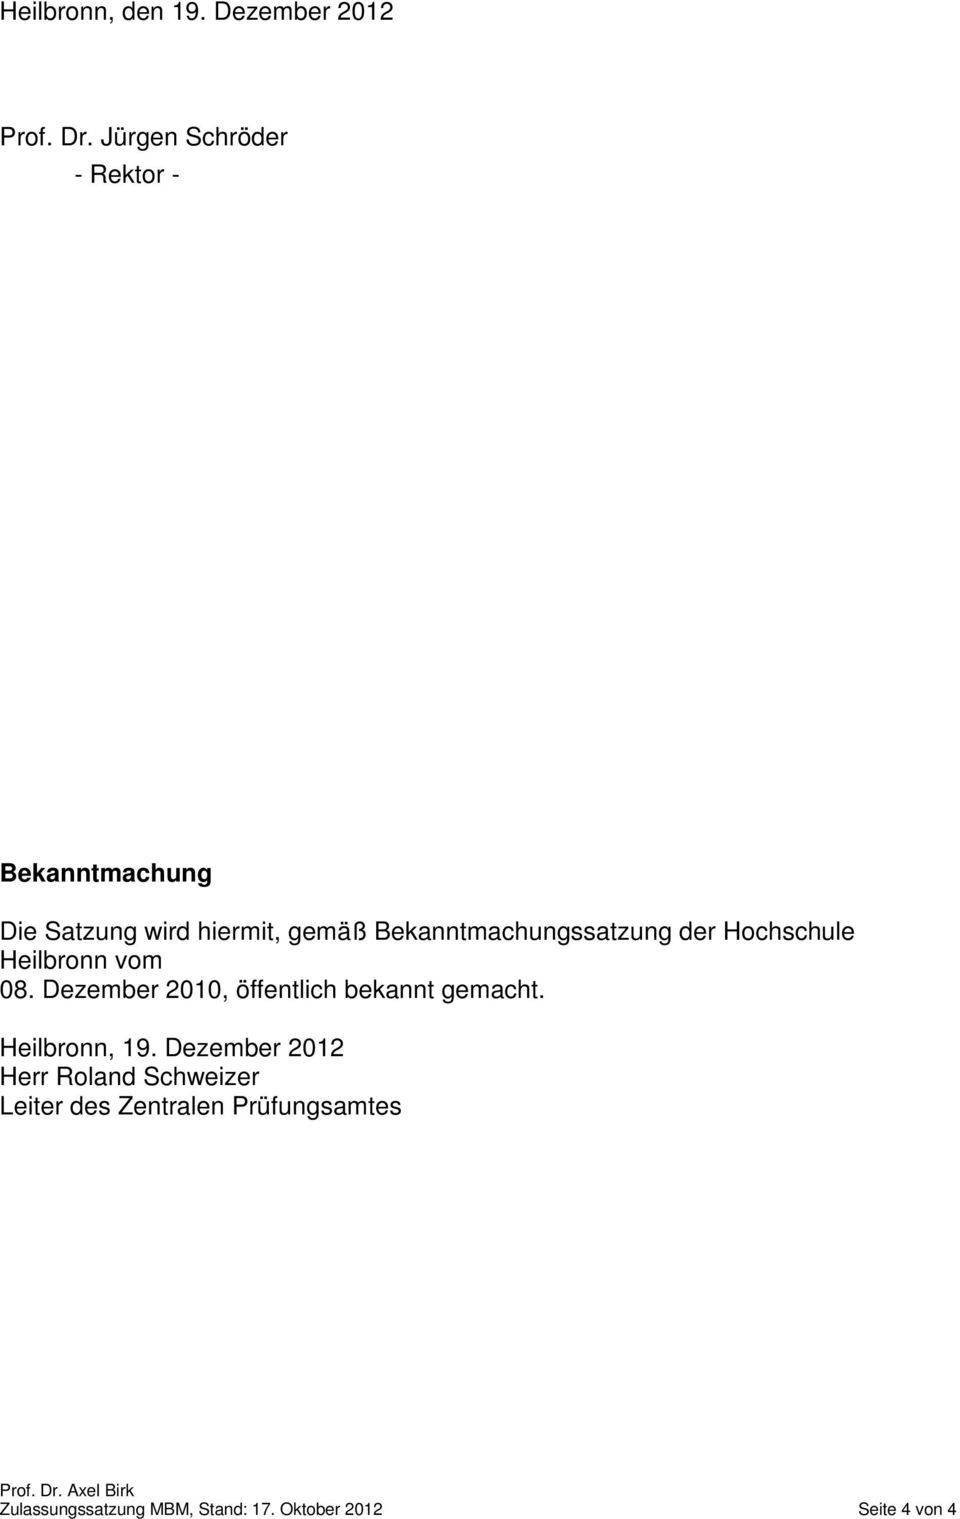 Bekanntmachungssatzung der Hochschule Heilbronn vom 08.